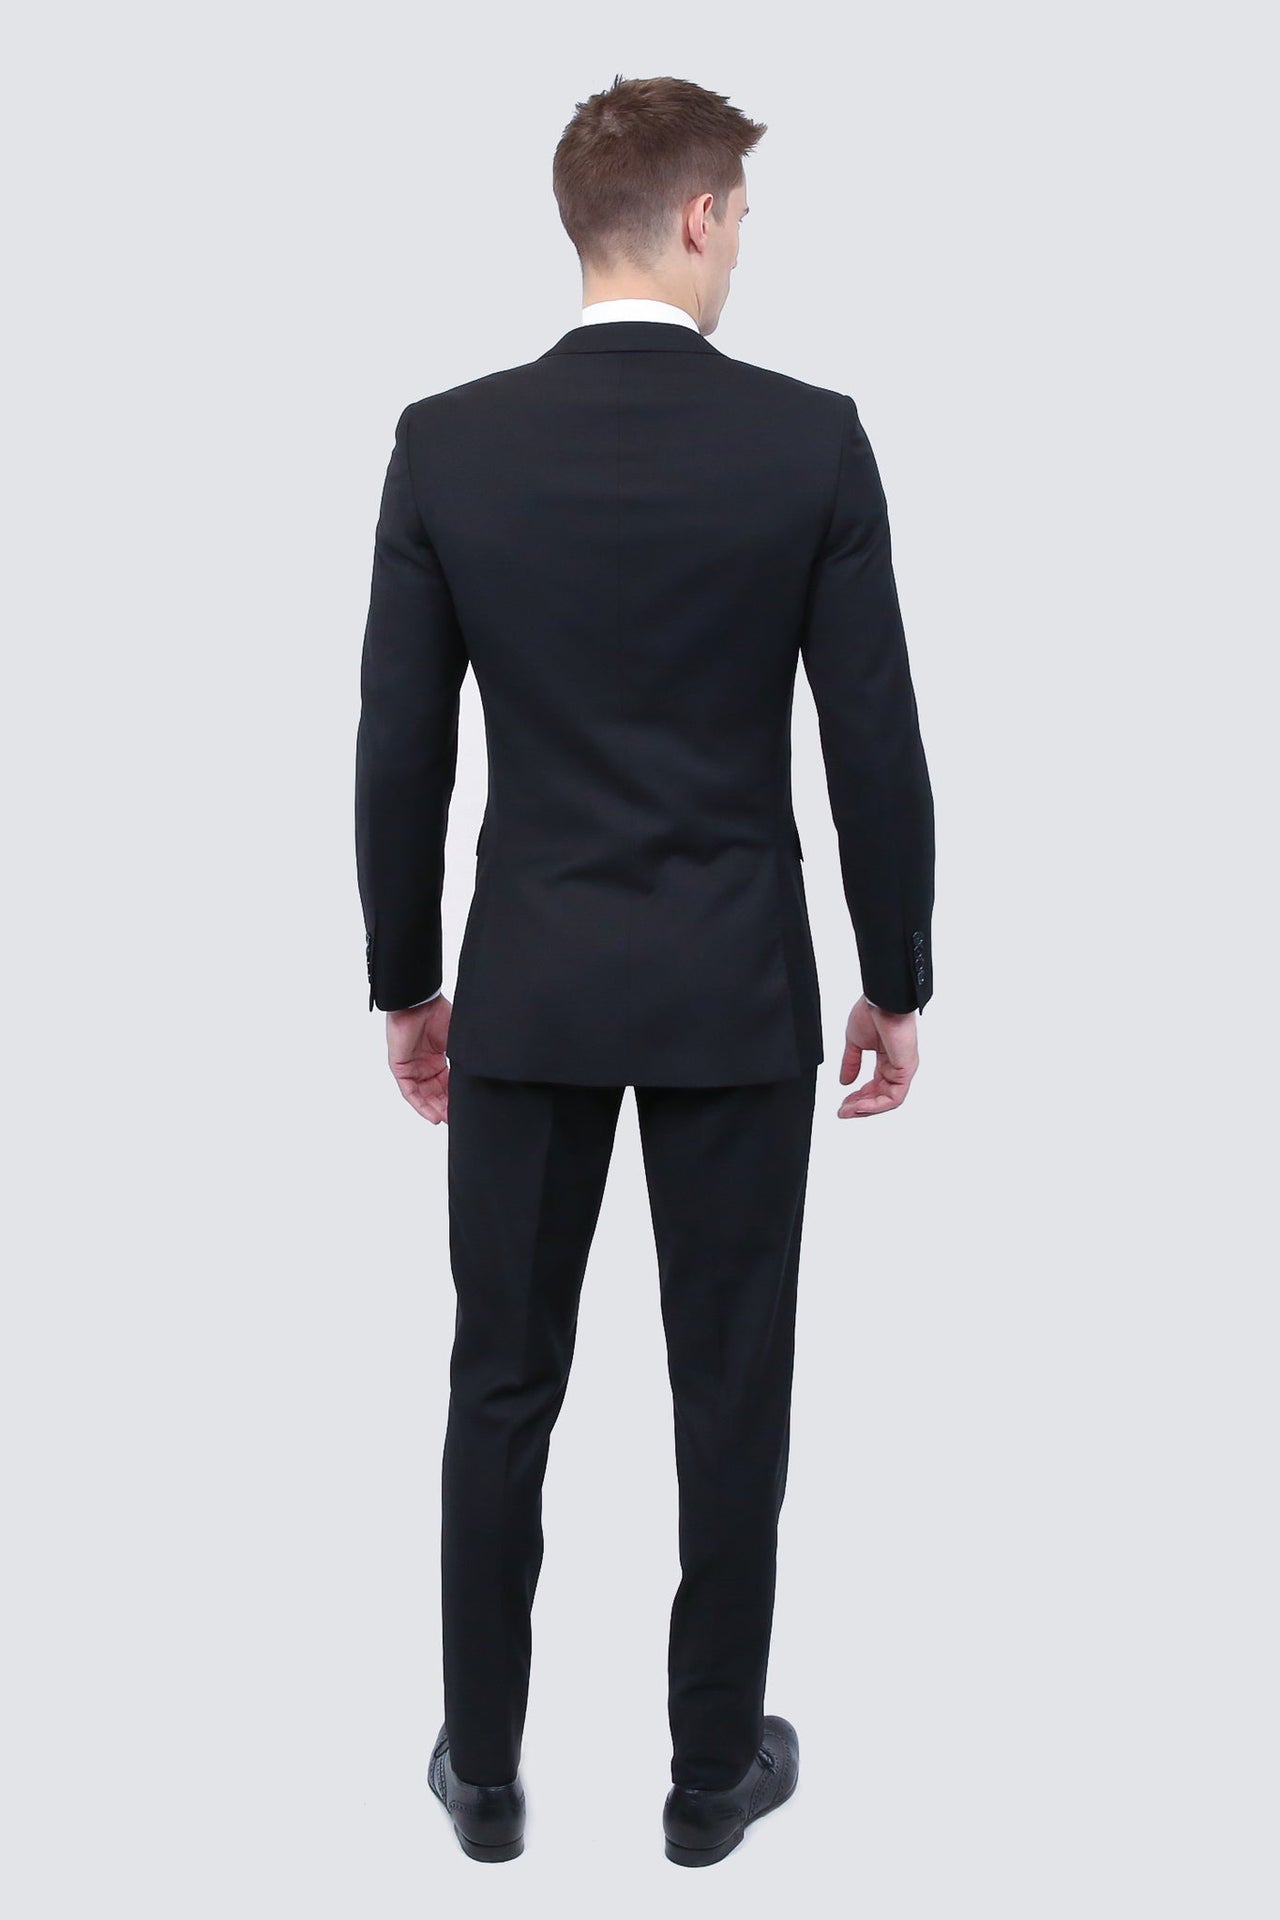 20 Best Black Suit For Men  Black suit men, Black suits, Slim fit suits